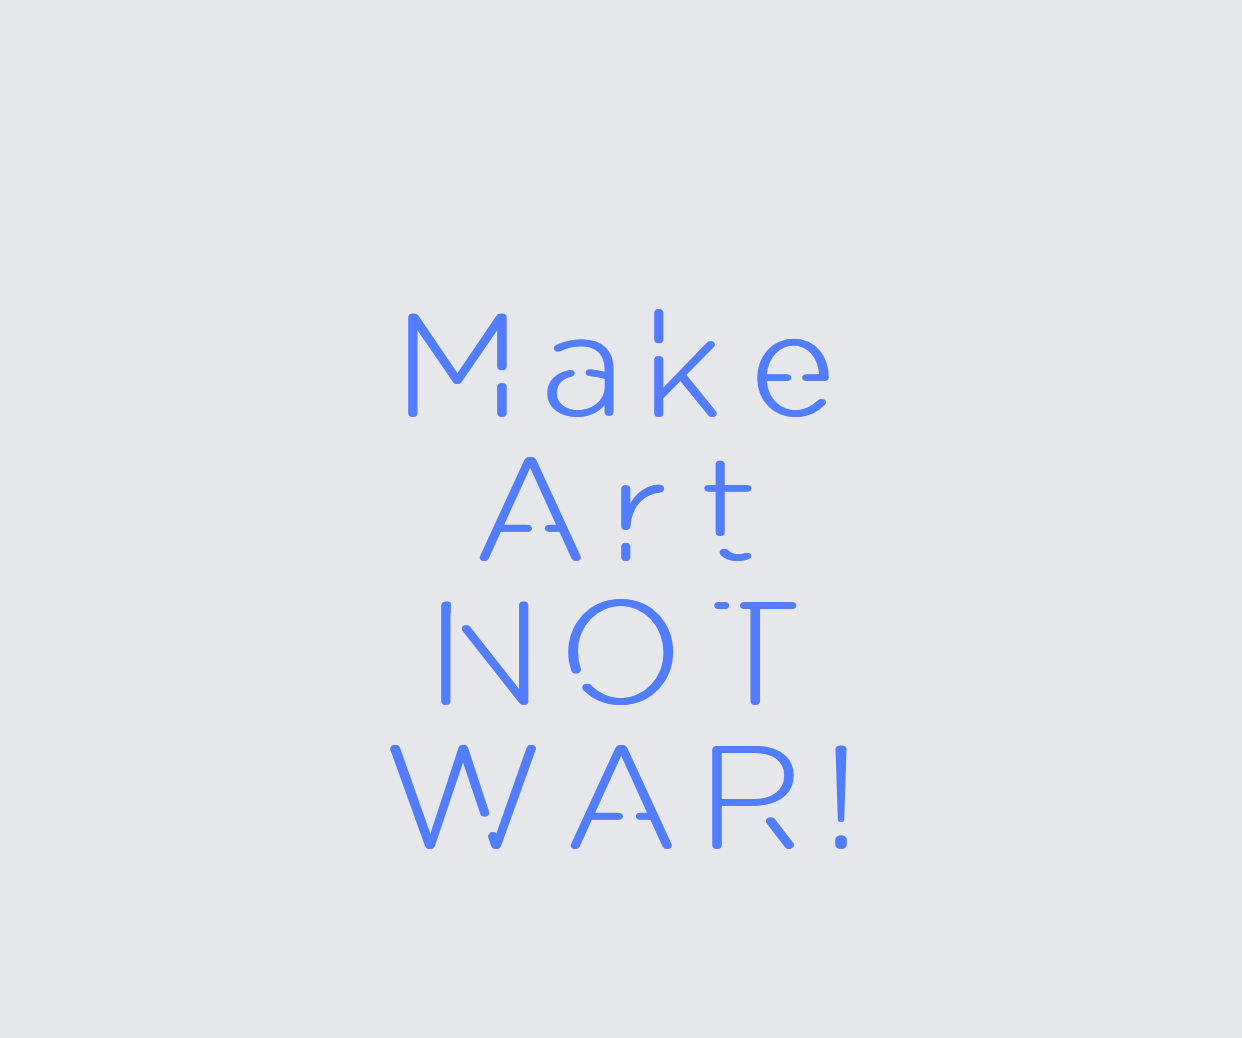 Custom neon sign - Make  Art  NOT  WAR!